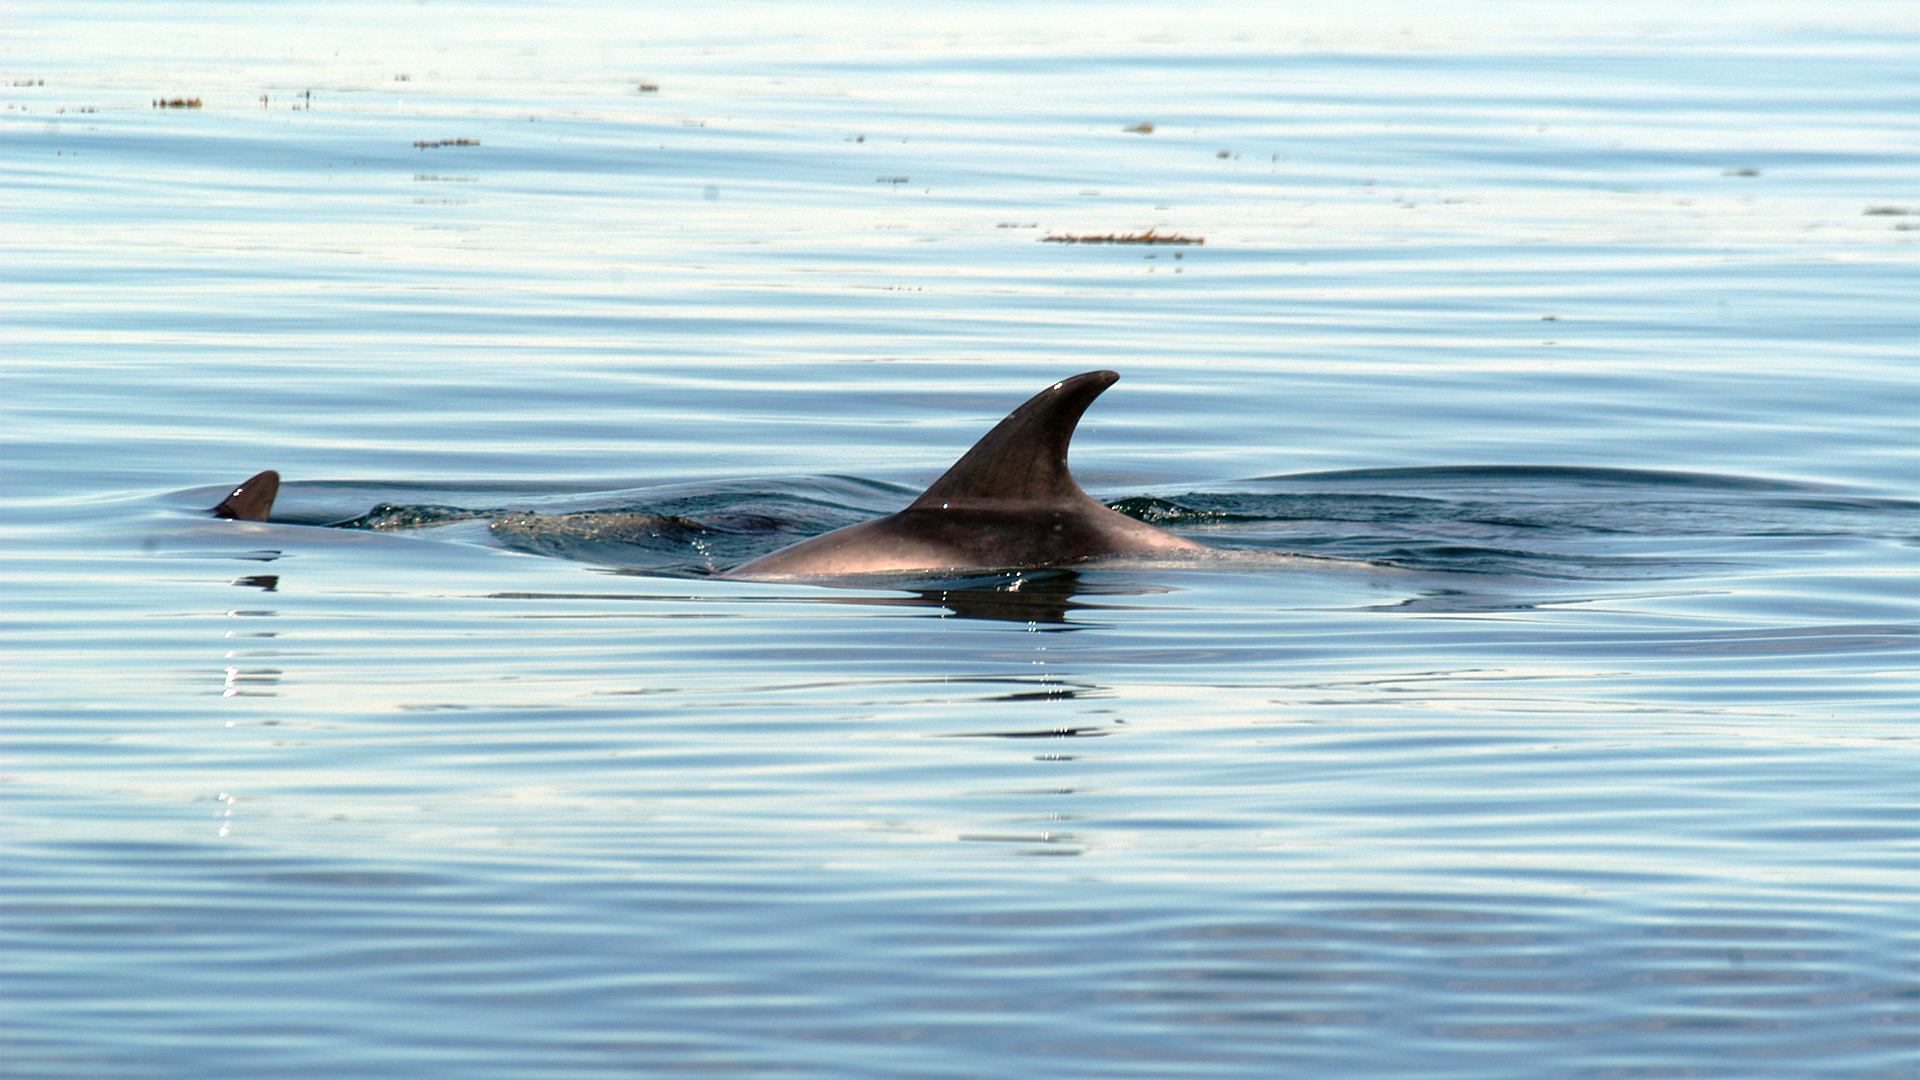 Le dos d’un dauphin avec sa nageoire dorsale en forme de faucille.